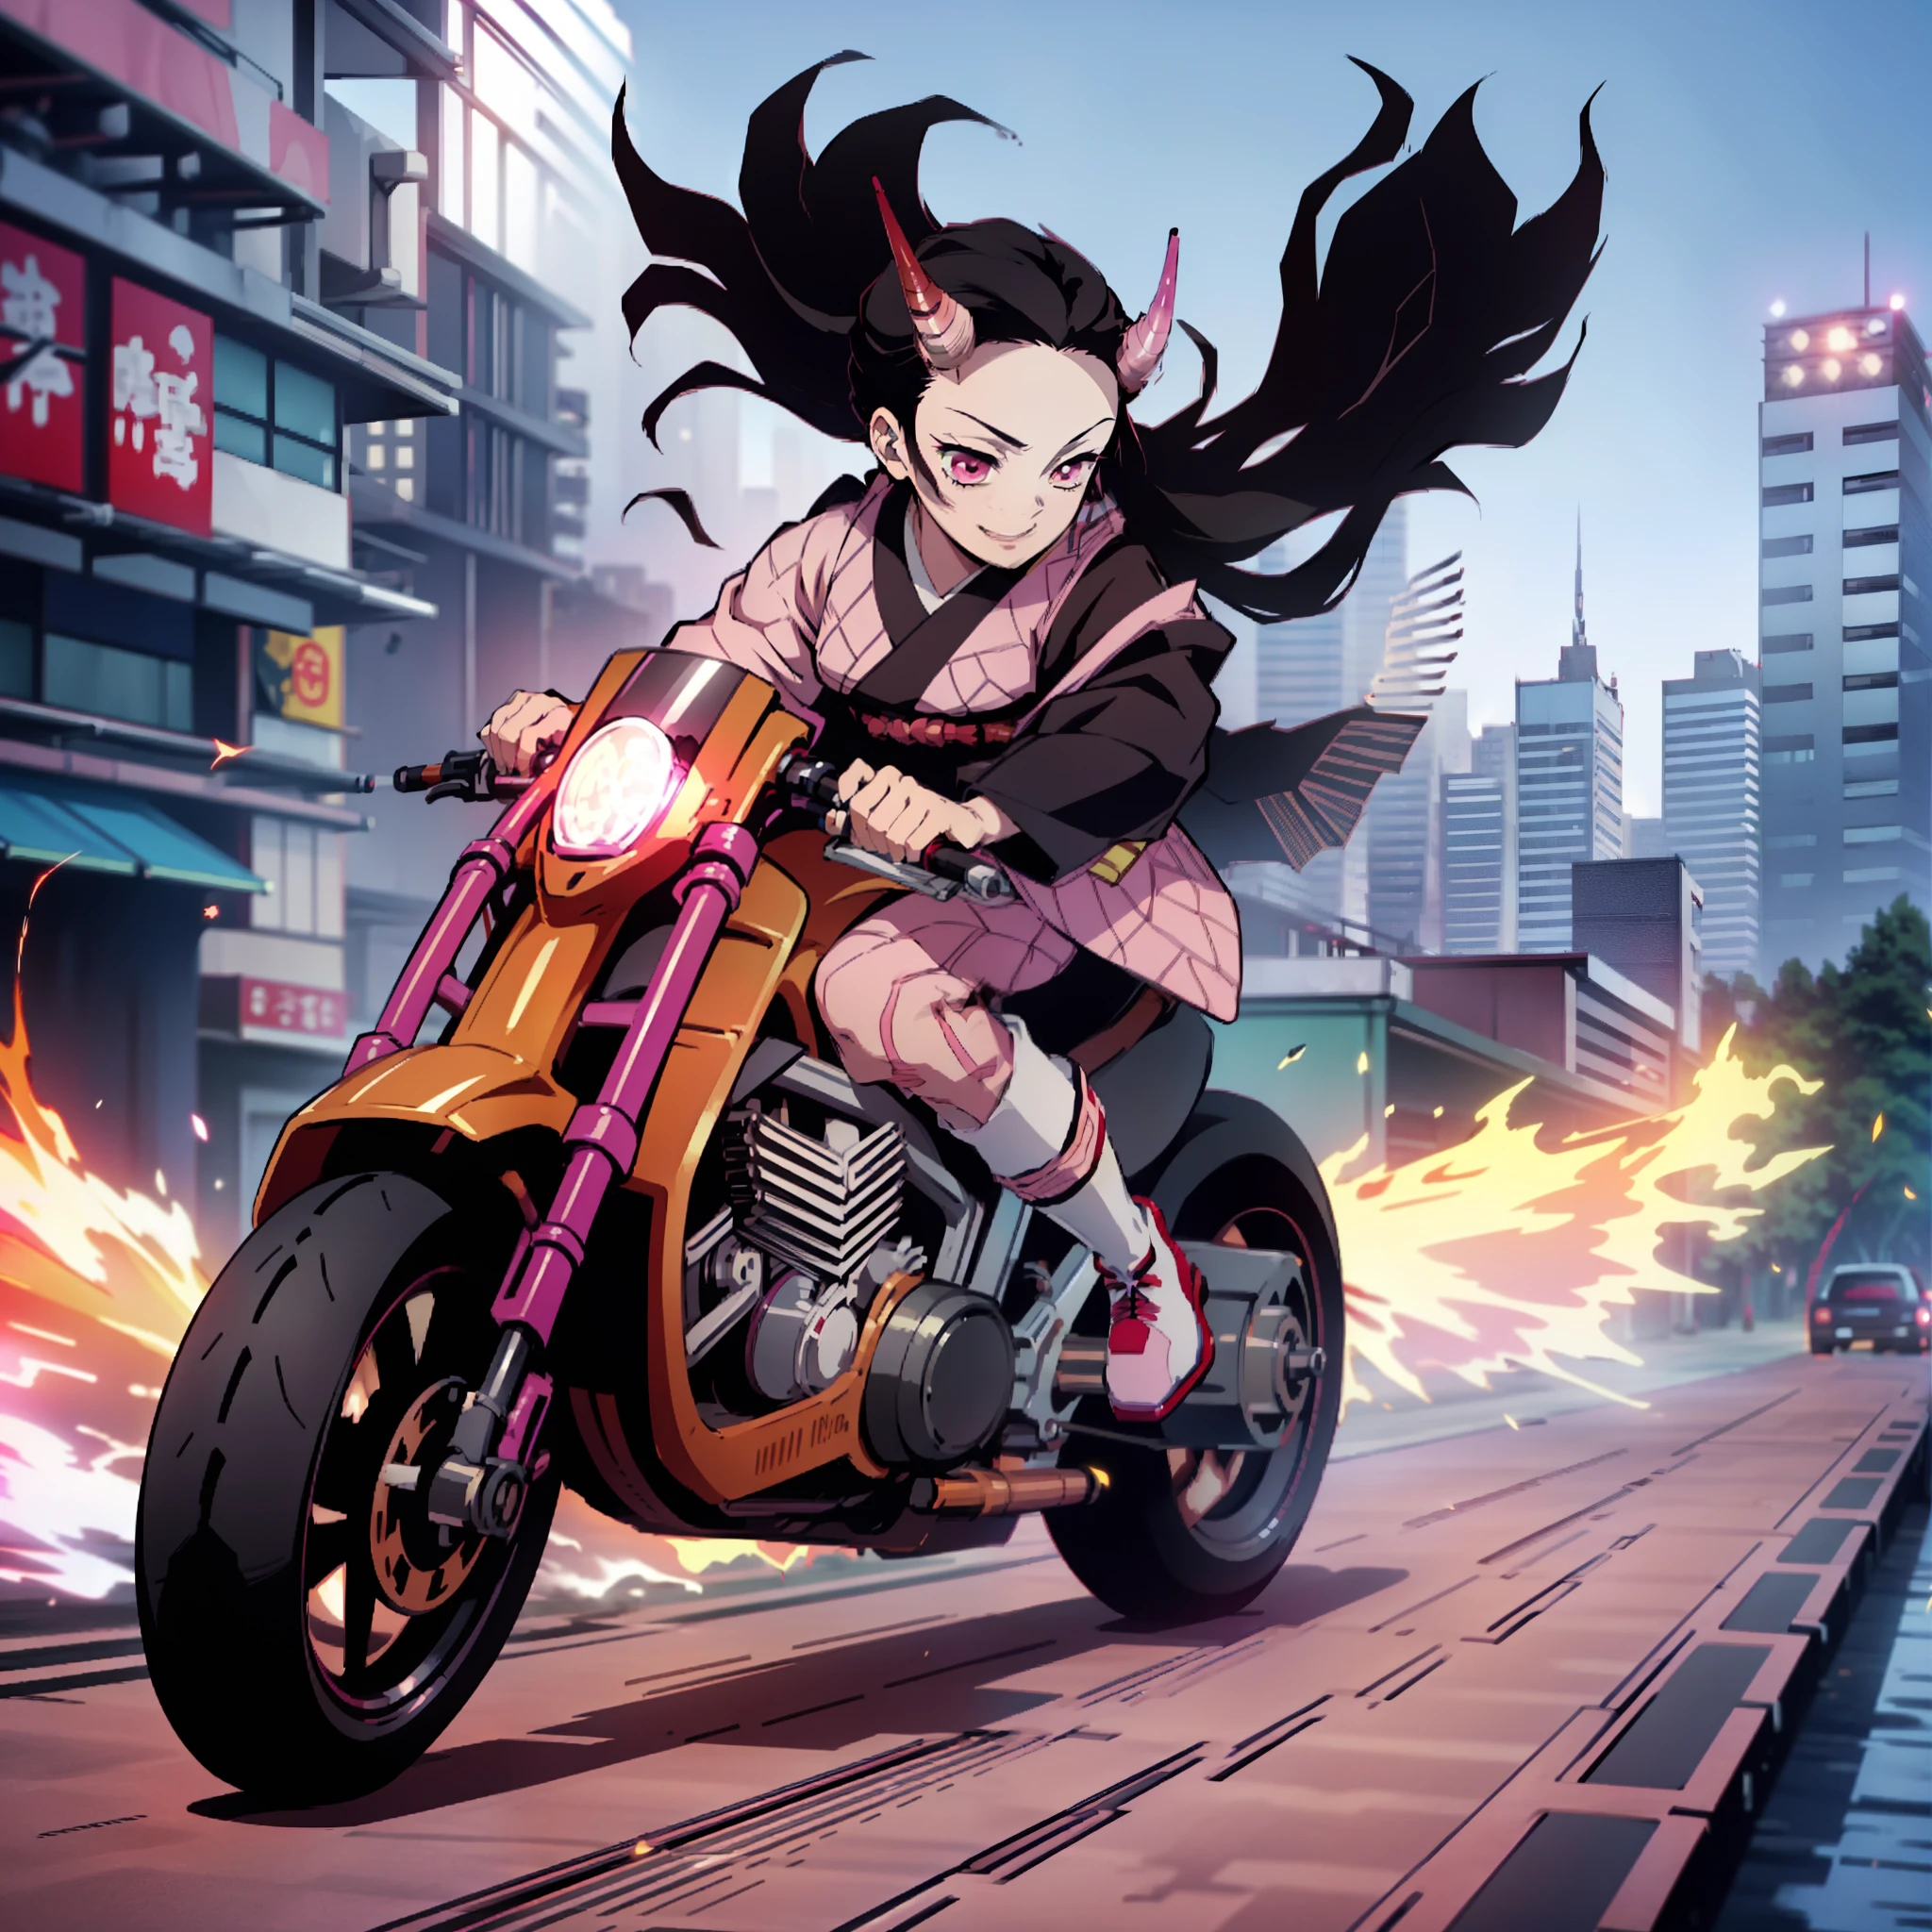 (Obra maestra, mejor calidad:1.2), estilo kimetsu no yaiba, kamado nezuko, (1 chica, solo), 20 años, cuerpo completo, (Quimono negro y rosa), botas de cuero negro, (cuernos de demonio rojo, ojos rojos), sonrisa maligna, BREAK (Conducir motocicleta en la ciudad a alta velocidad., mantener el caballito, yhmoto), (Camara lenta:1.3), (Desenfoque de movimiento:1.3), (líneas de velocidad:1.4), Sensación de velocidad, Chispas y humo saliendo de los neumáticos.